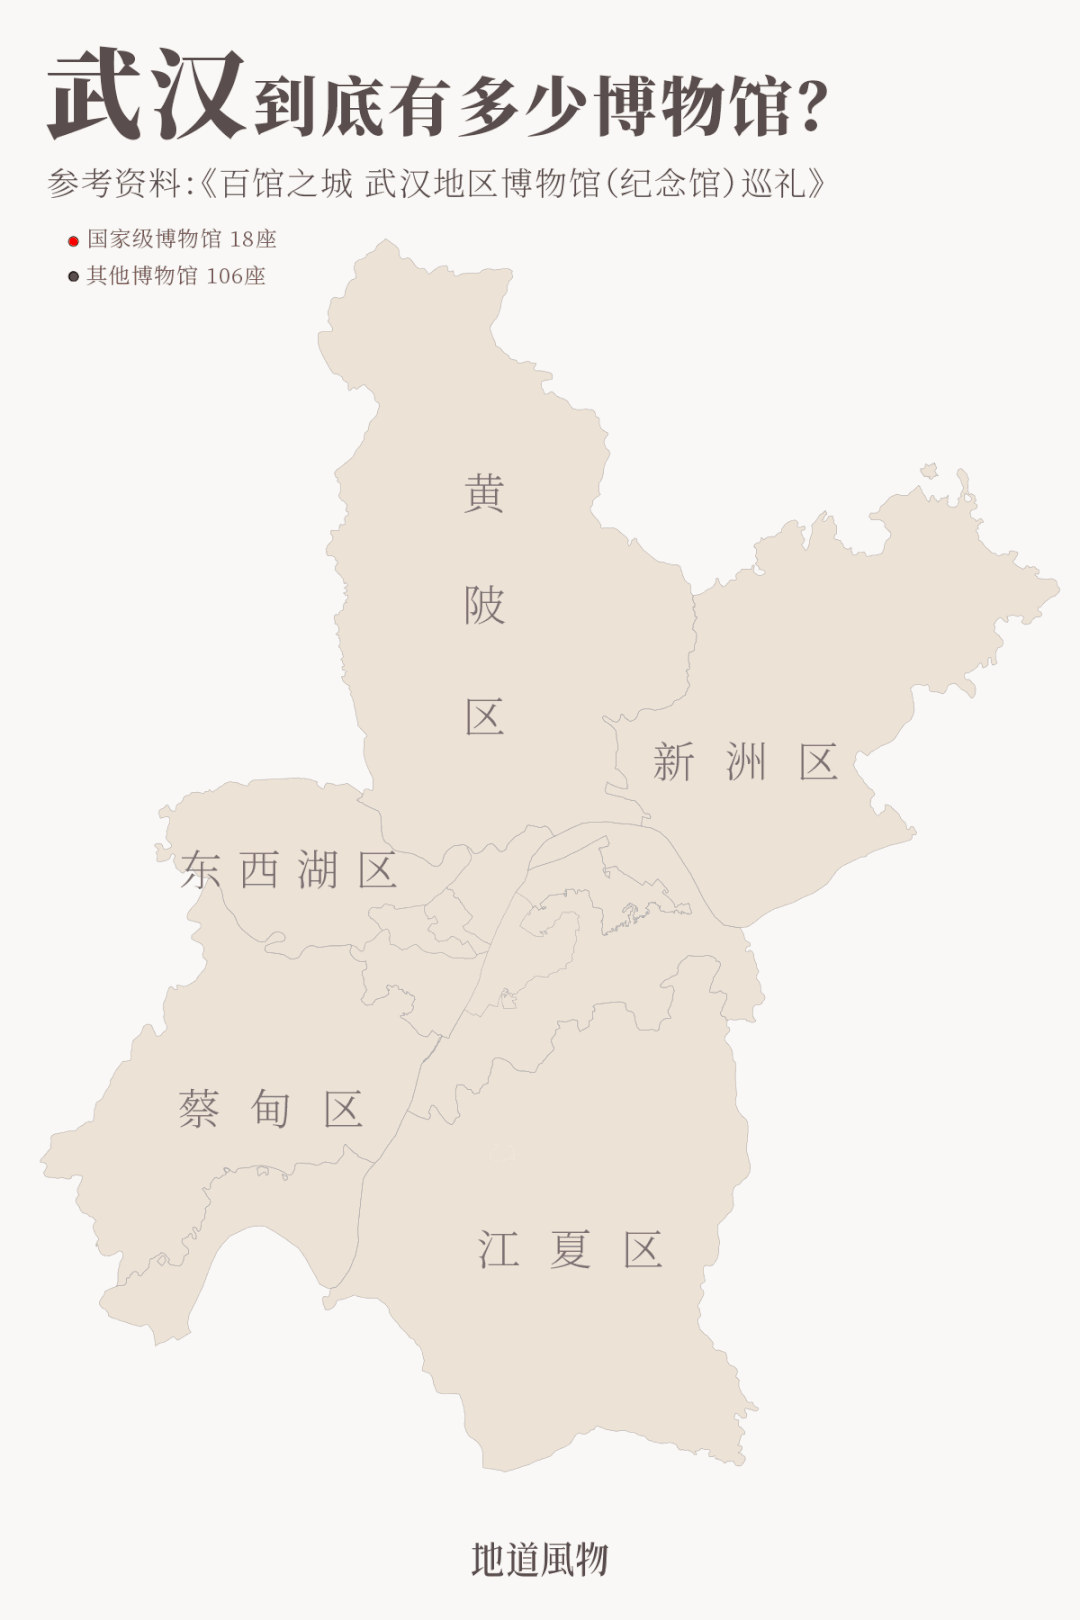 大武汉的江湖气魄，到底从哪里来？